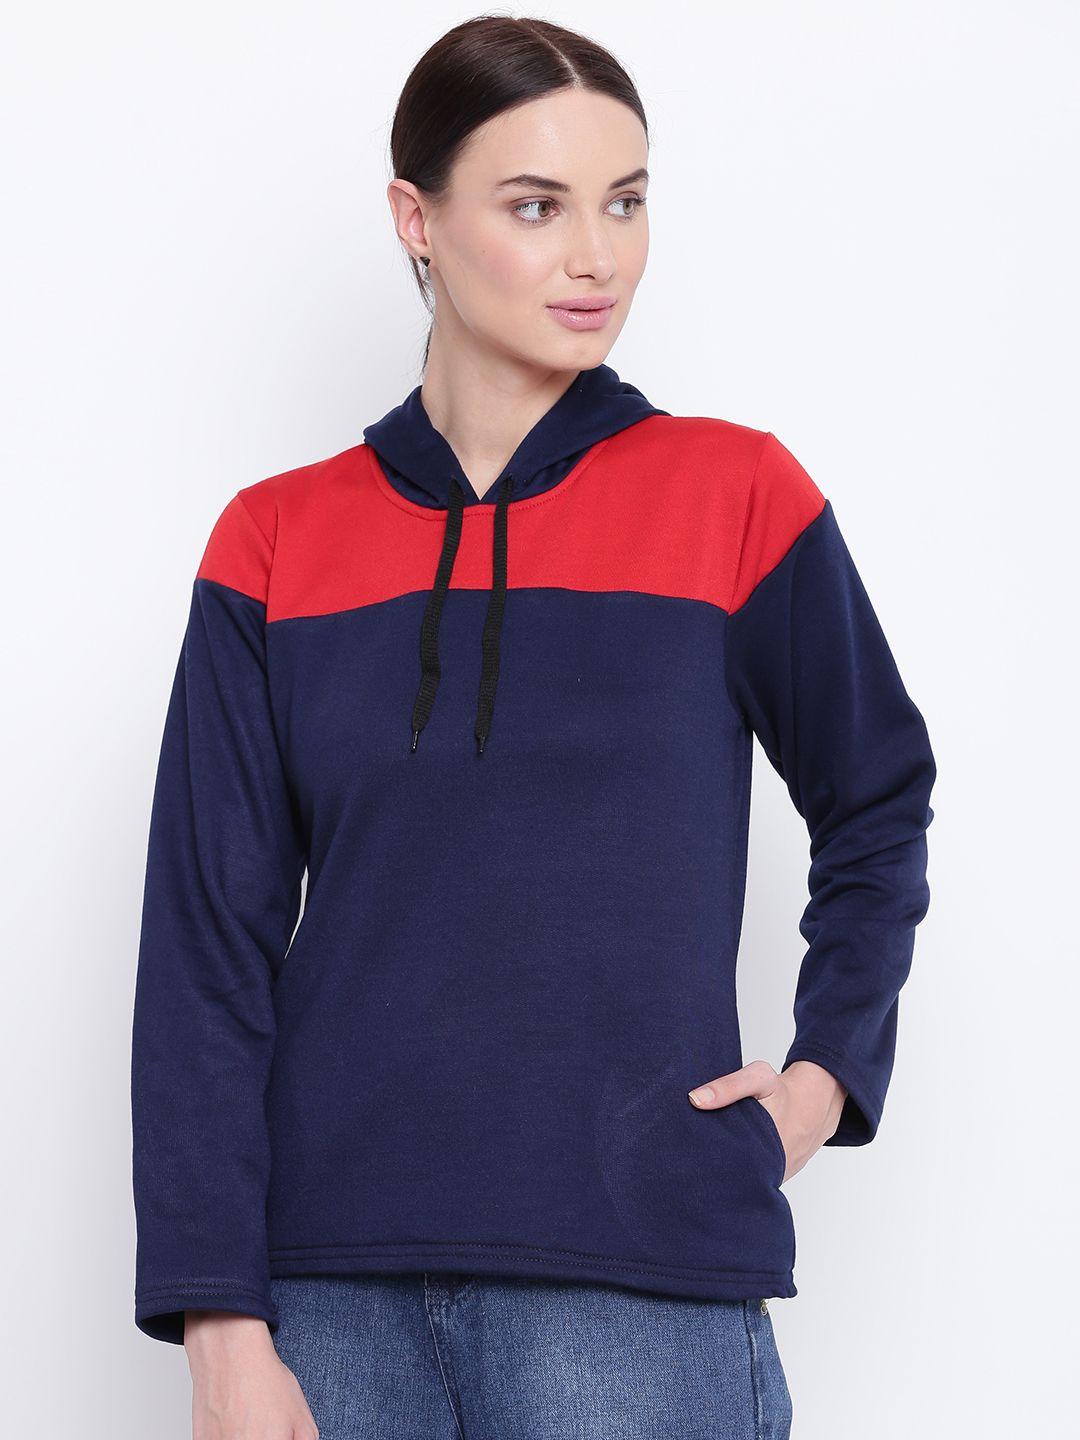 belle-fille-women-navy-blue-&-red-colourblocked-hooded-sweatshirt